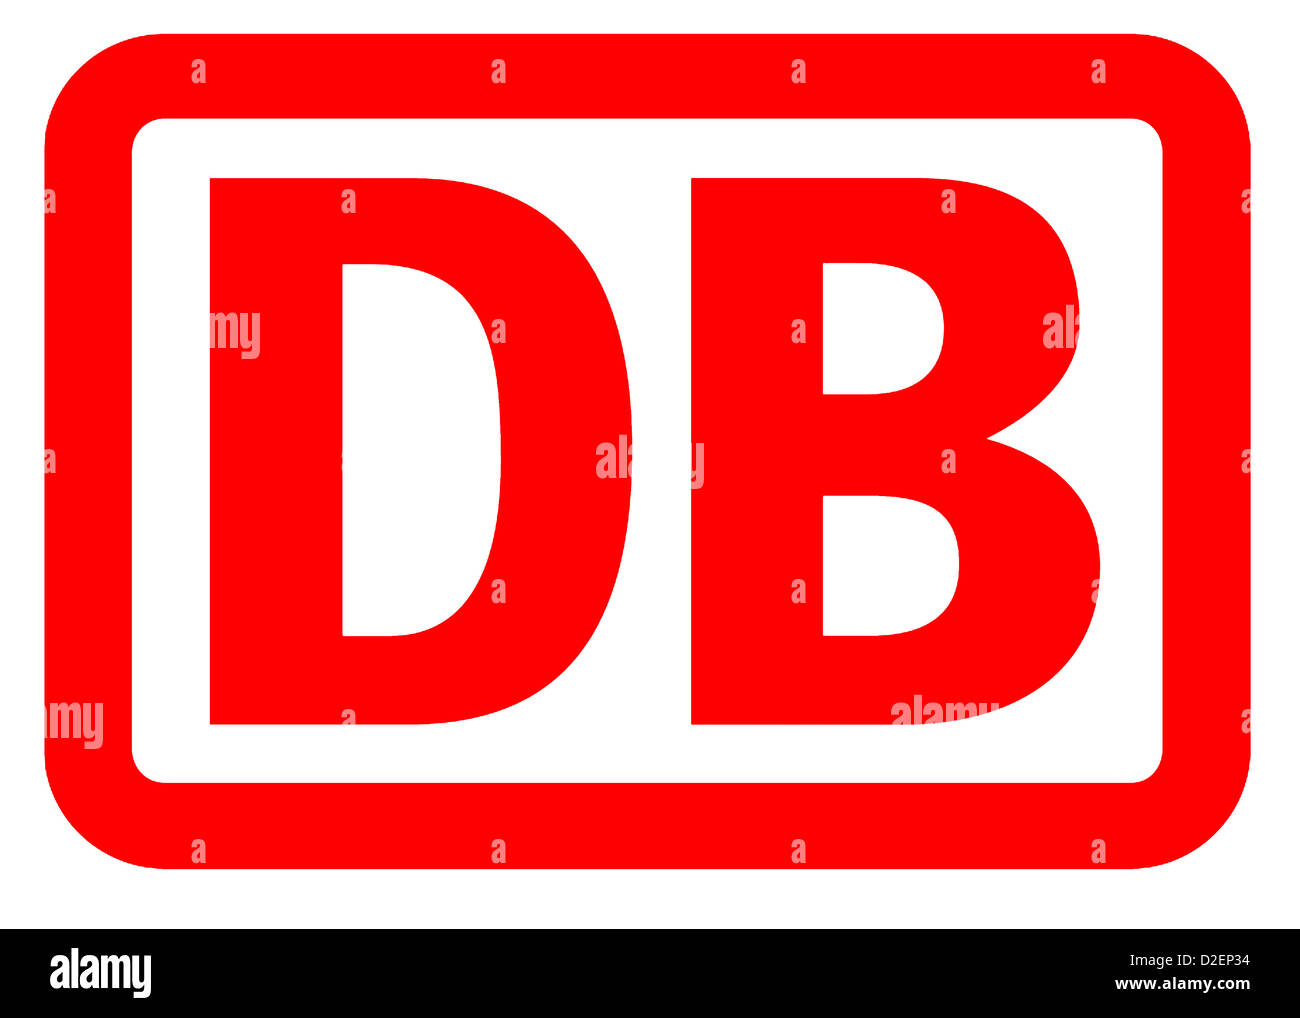 Le logo entreprises logistique allemand Deutsche Bahn AG, basée à Berlin. Banque D'Images